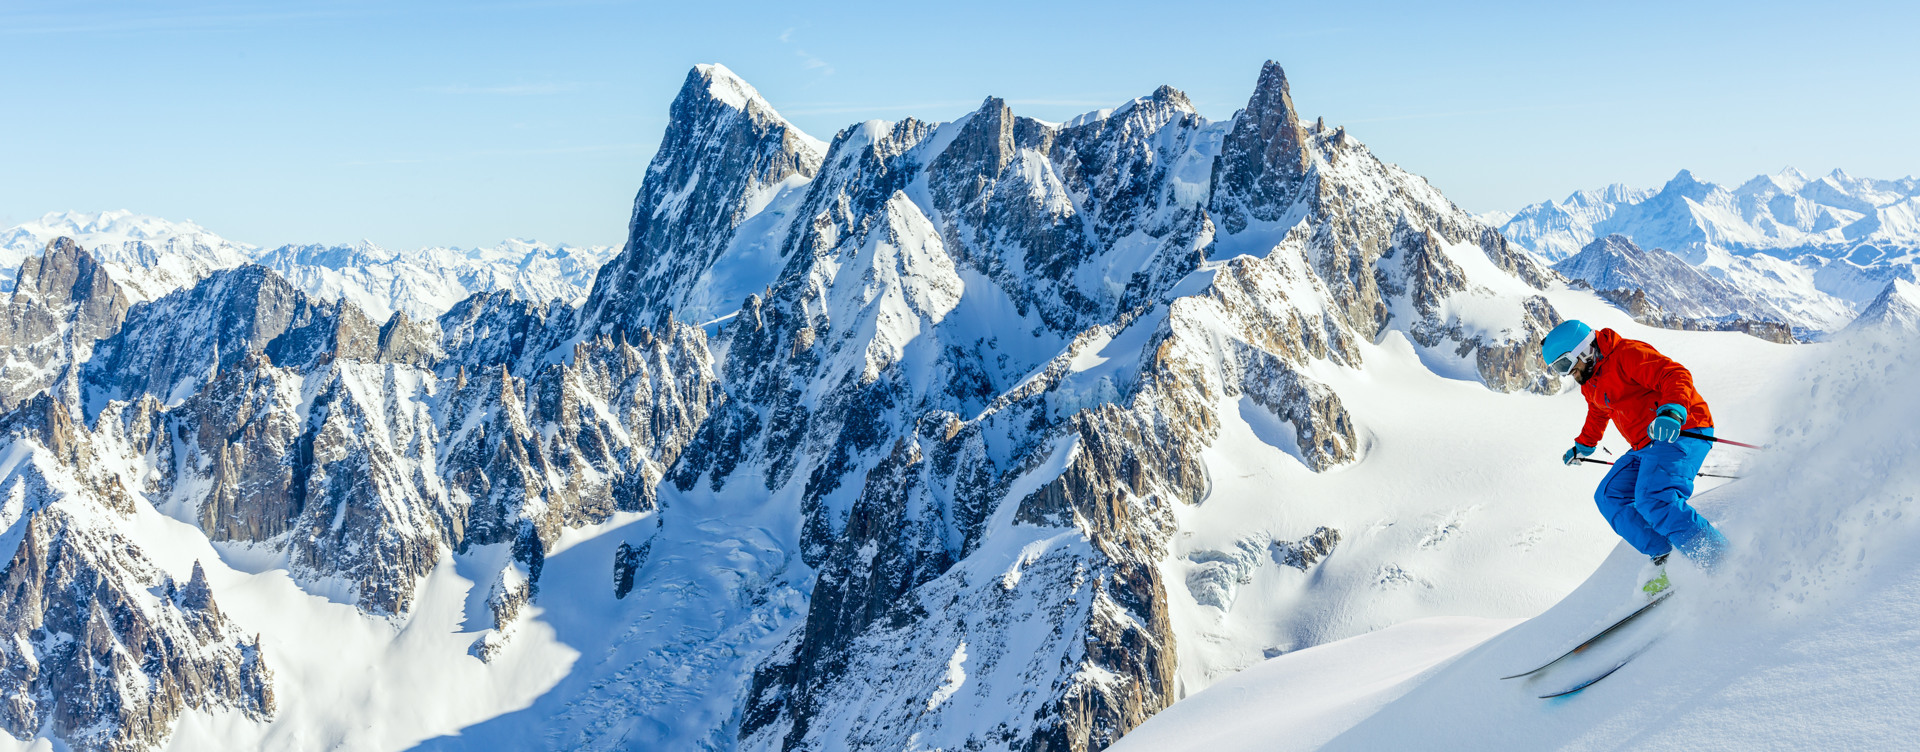 Erleben Sie einen unvergesslichen Winter in der wunderschönen Alpenregion